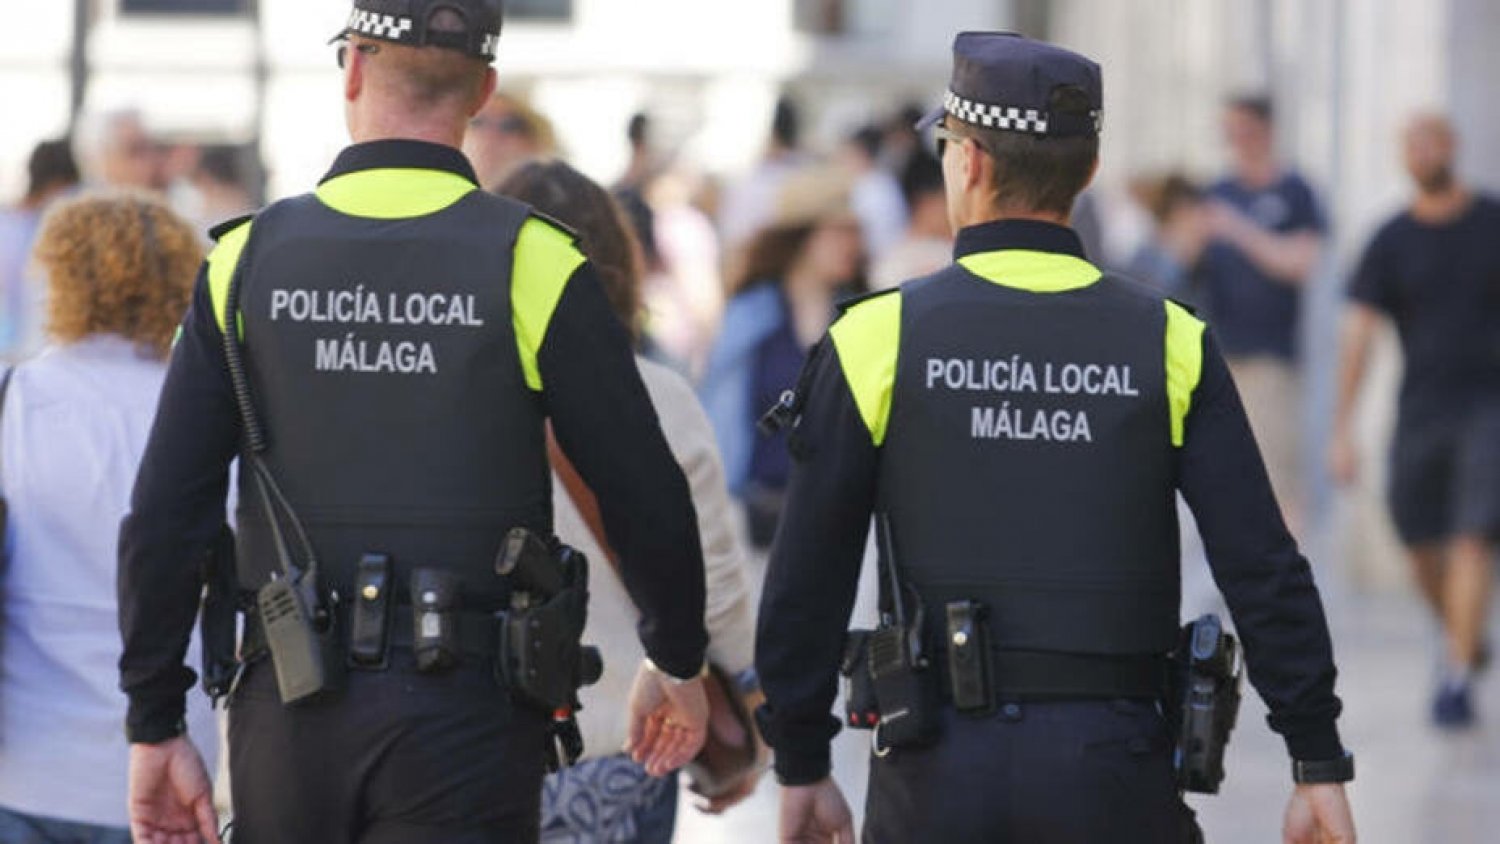 La Policía Local tramita 106 denuncias en materia de control de ruidos y convivencia en la última semana